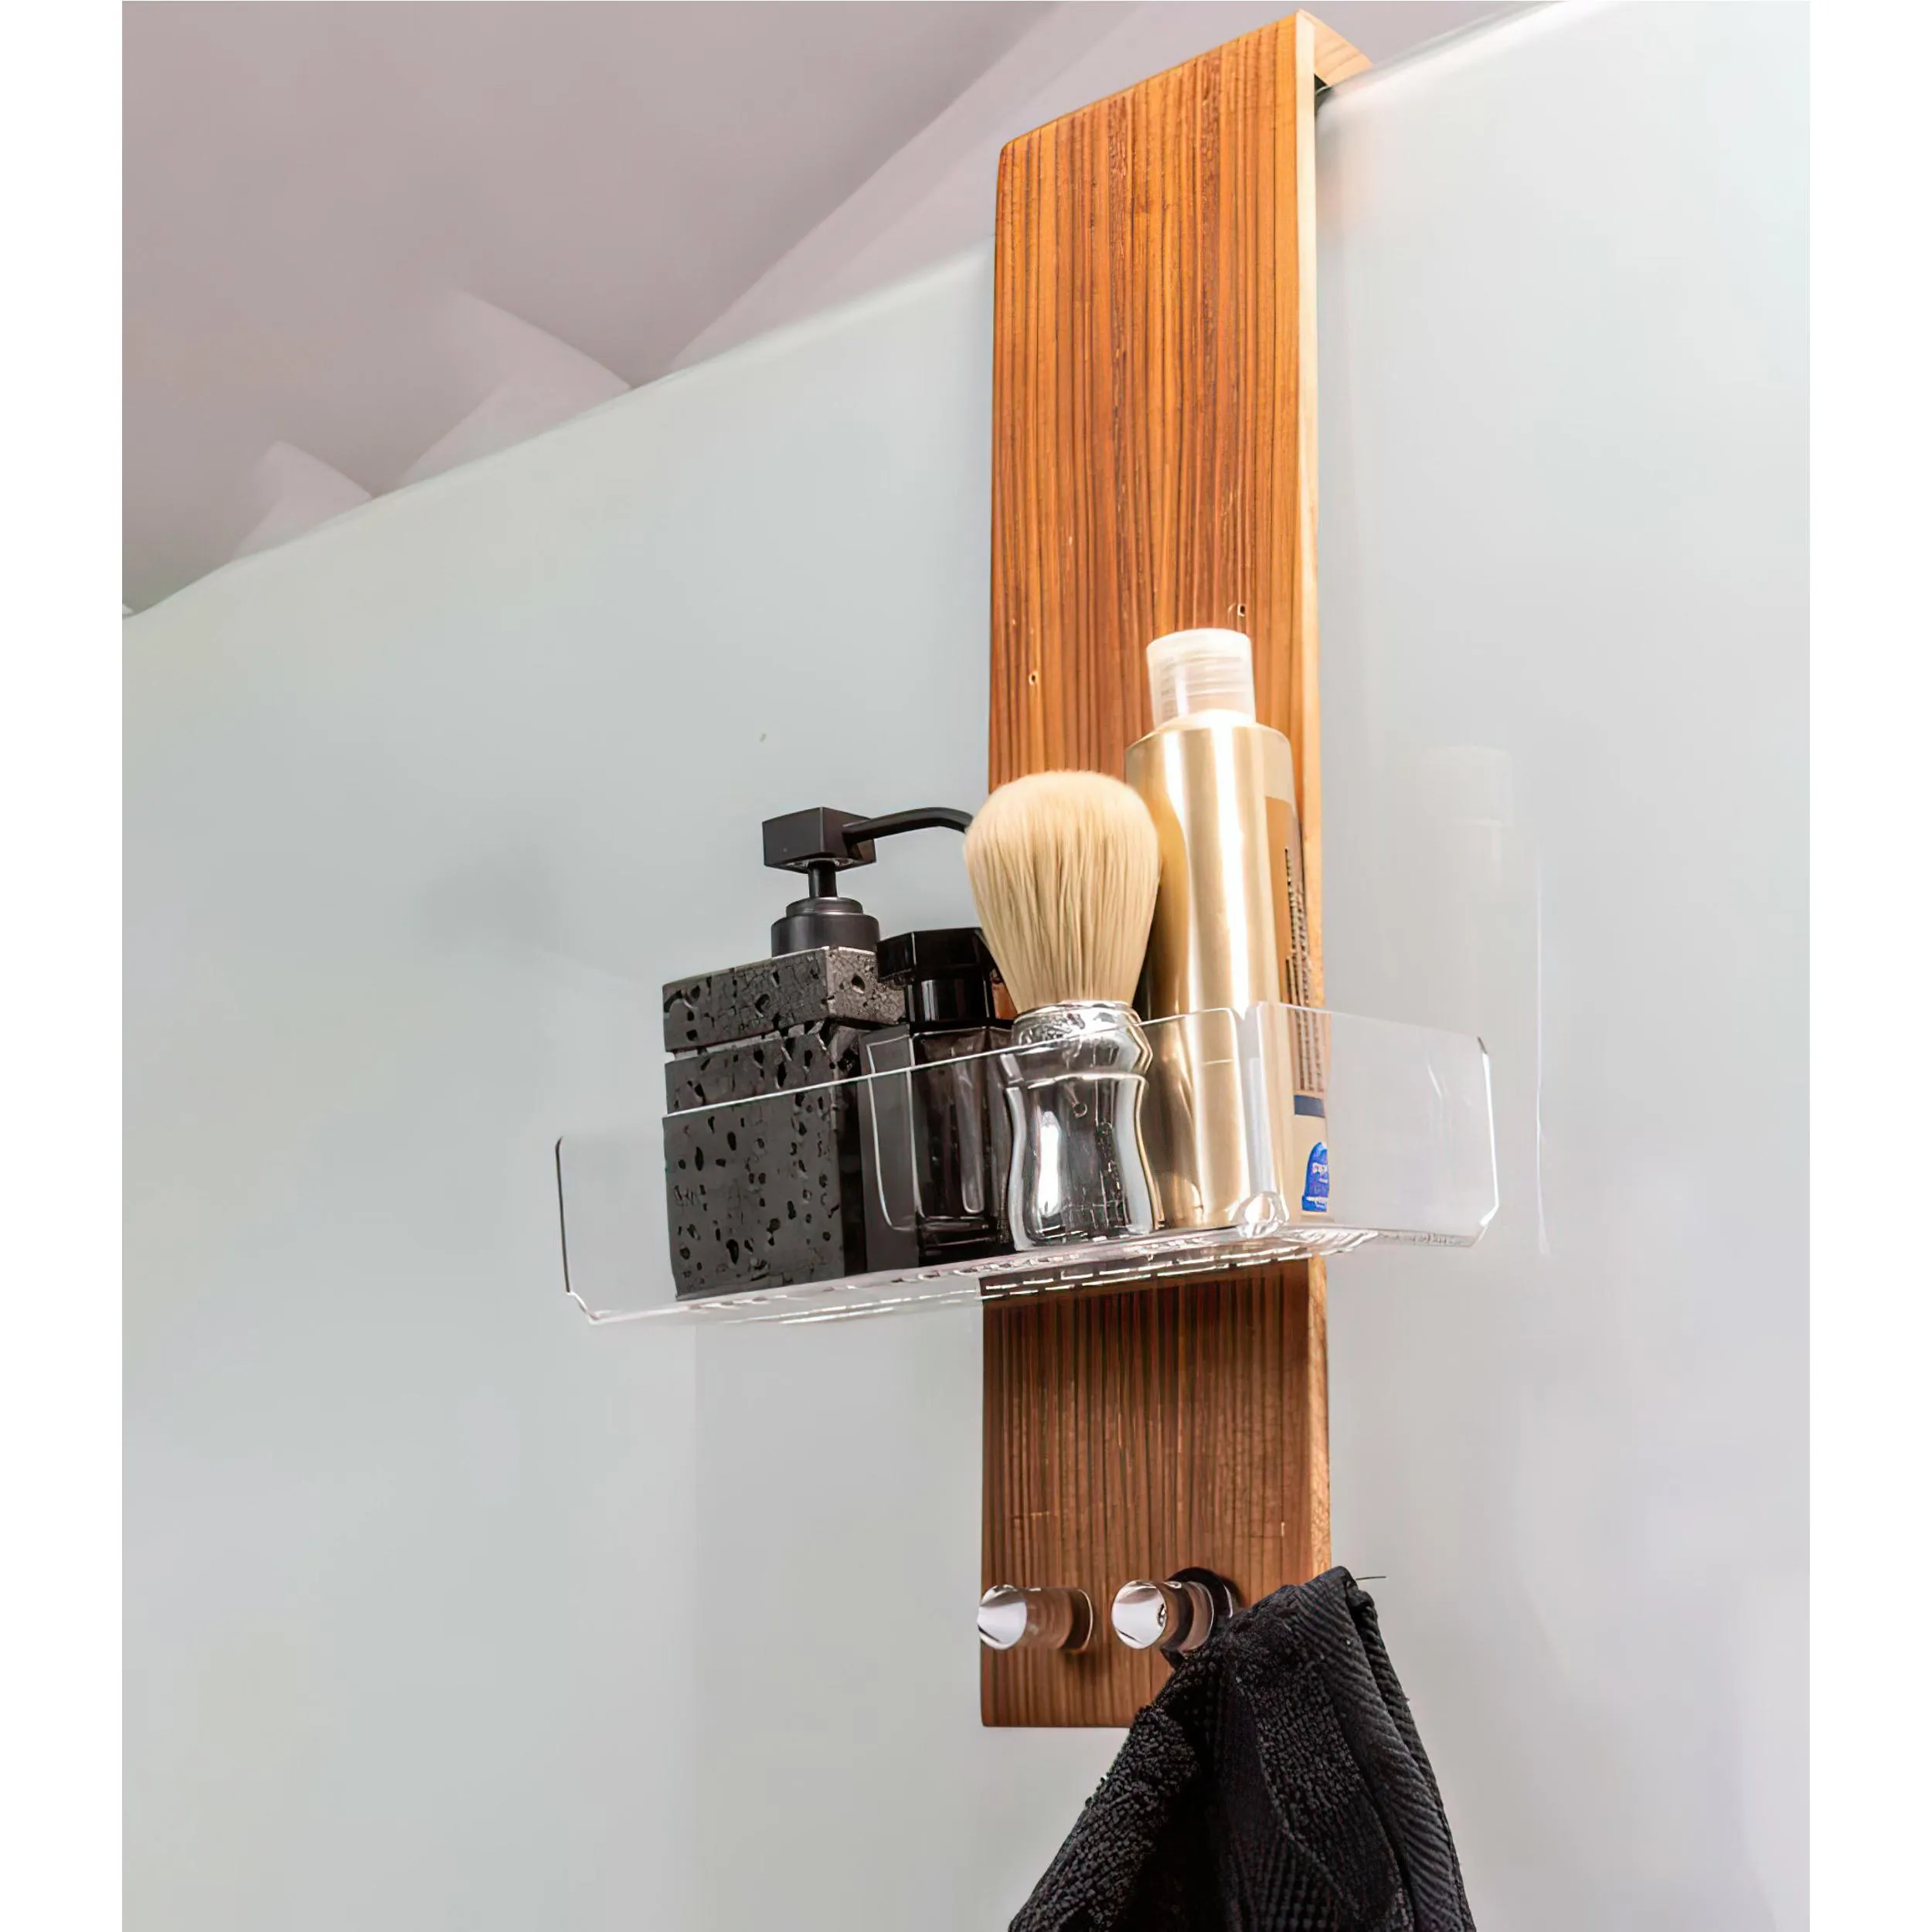 Porta oggetti per doccia Dimensioni 25x15,5xh 50 cm con doppio gancio e vaschetta interna in plexiglass e struttura portante in teak